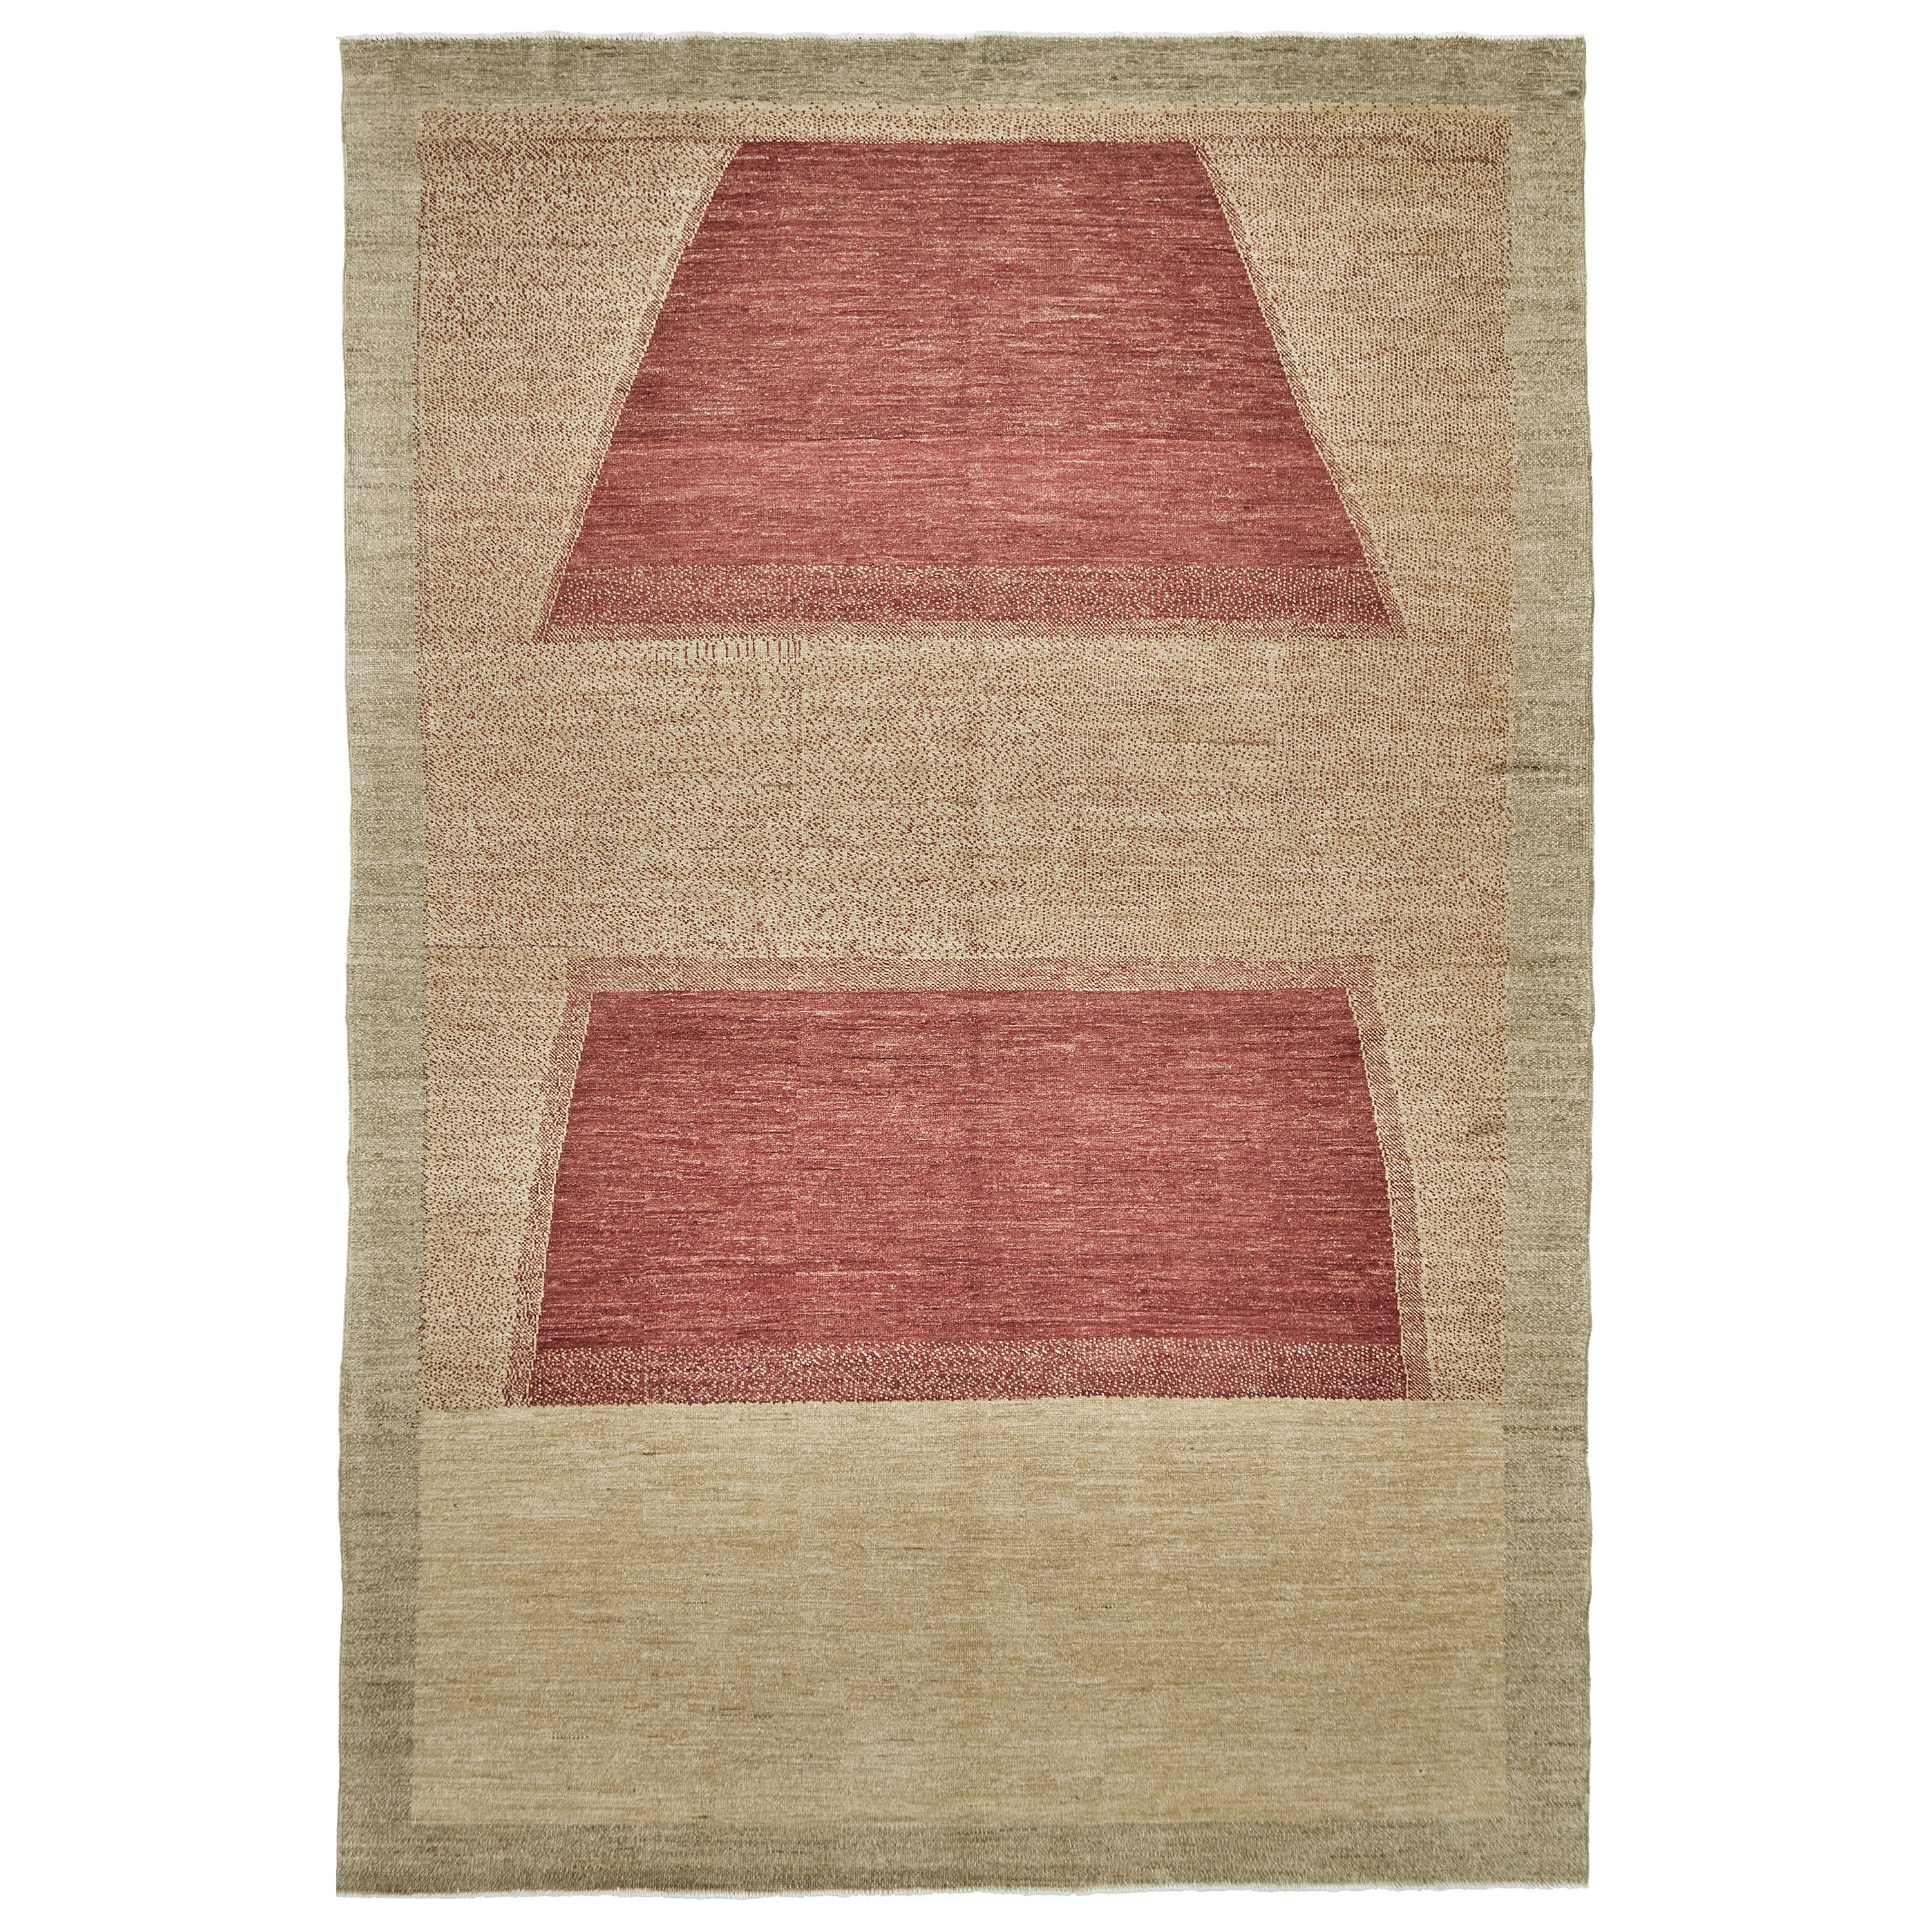 Mehraban Naturfarbener Teppich in zeitgenössischem Design der Mondrian-Kollektion